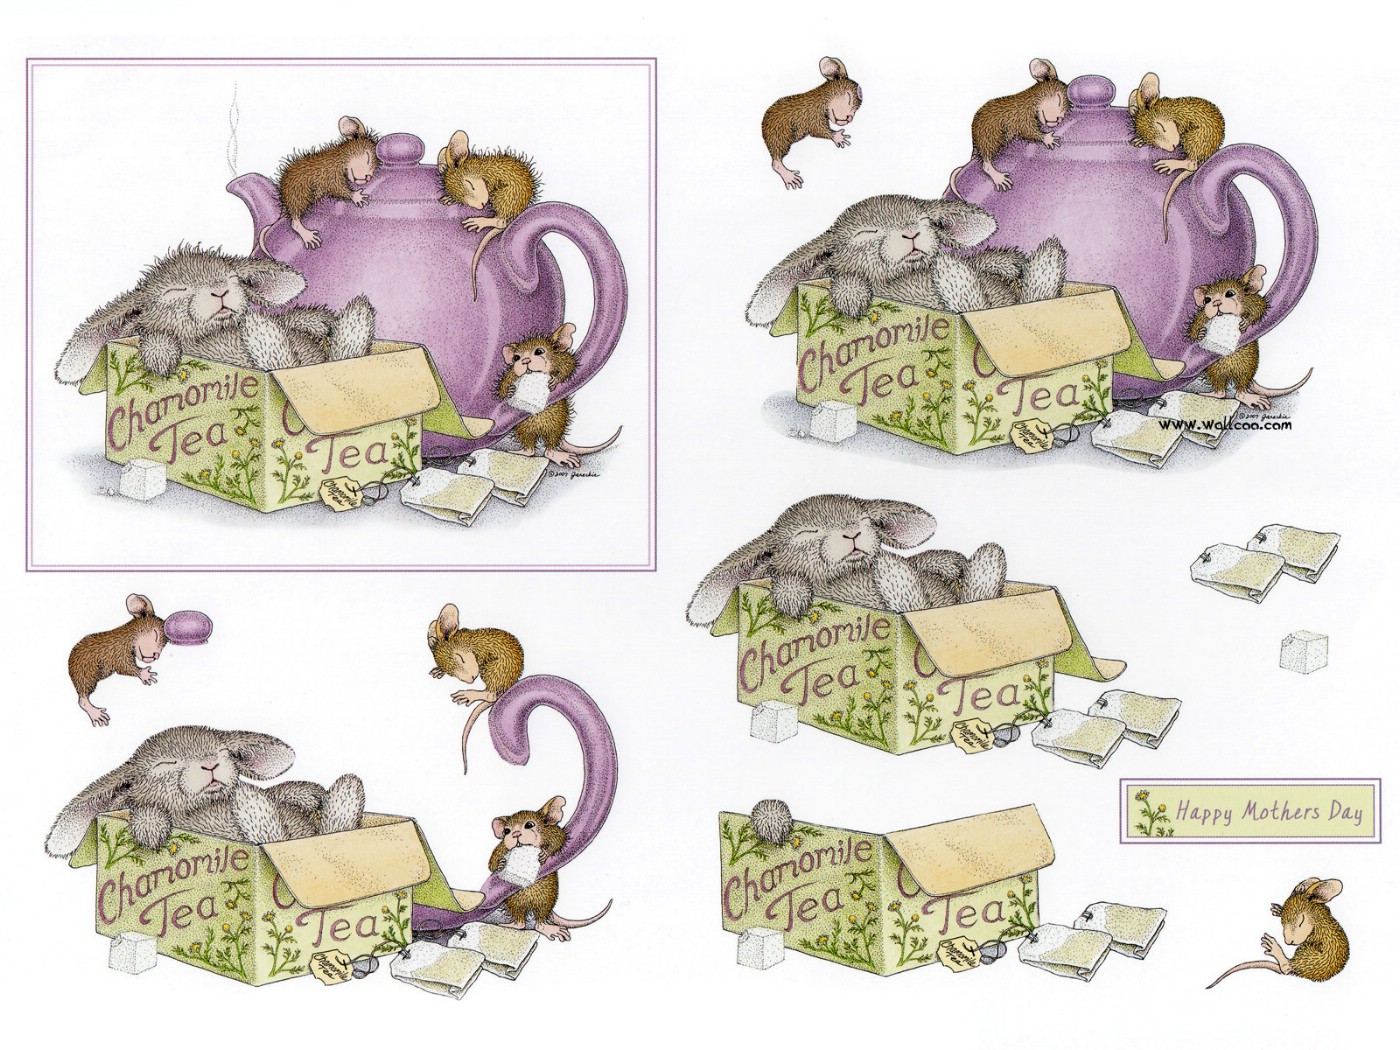 壁纸1400x1050 chamomile 可爱小老鼠插画原画壁纸 鼠鼠一家-温馨小老鼠插画壁纸壁纸 鼠鼠一家-温馨小老鼠插画壁纸图片 鼠鼠一家-温馨小老鼠插画壁纸素材 绘画壁纸 绘画图库 绘画图片素材桌面壁纸